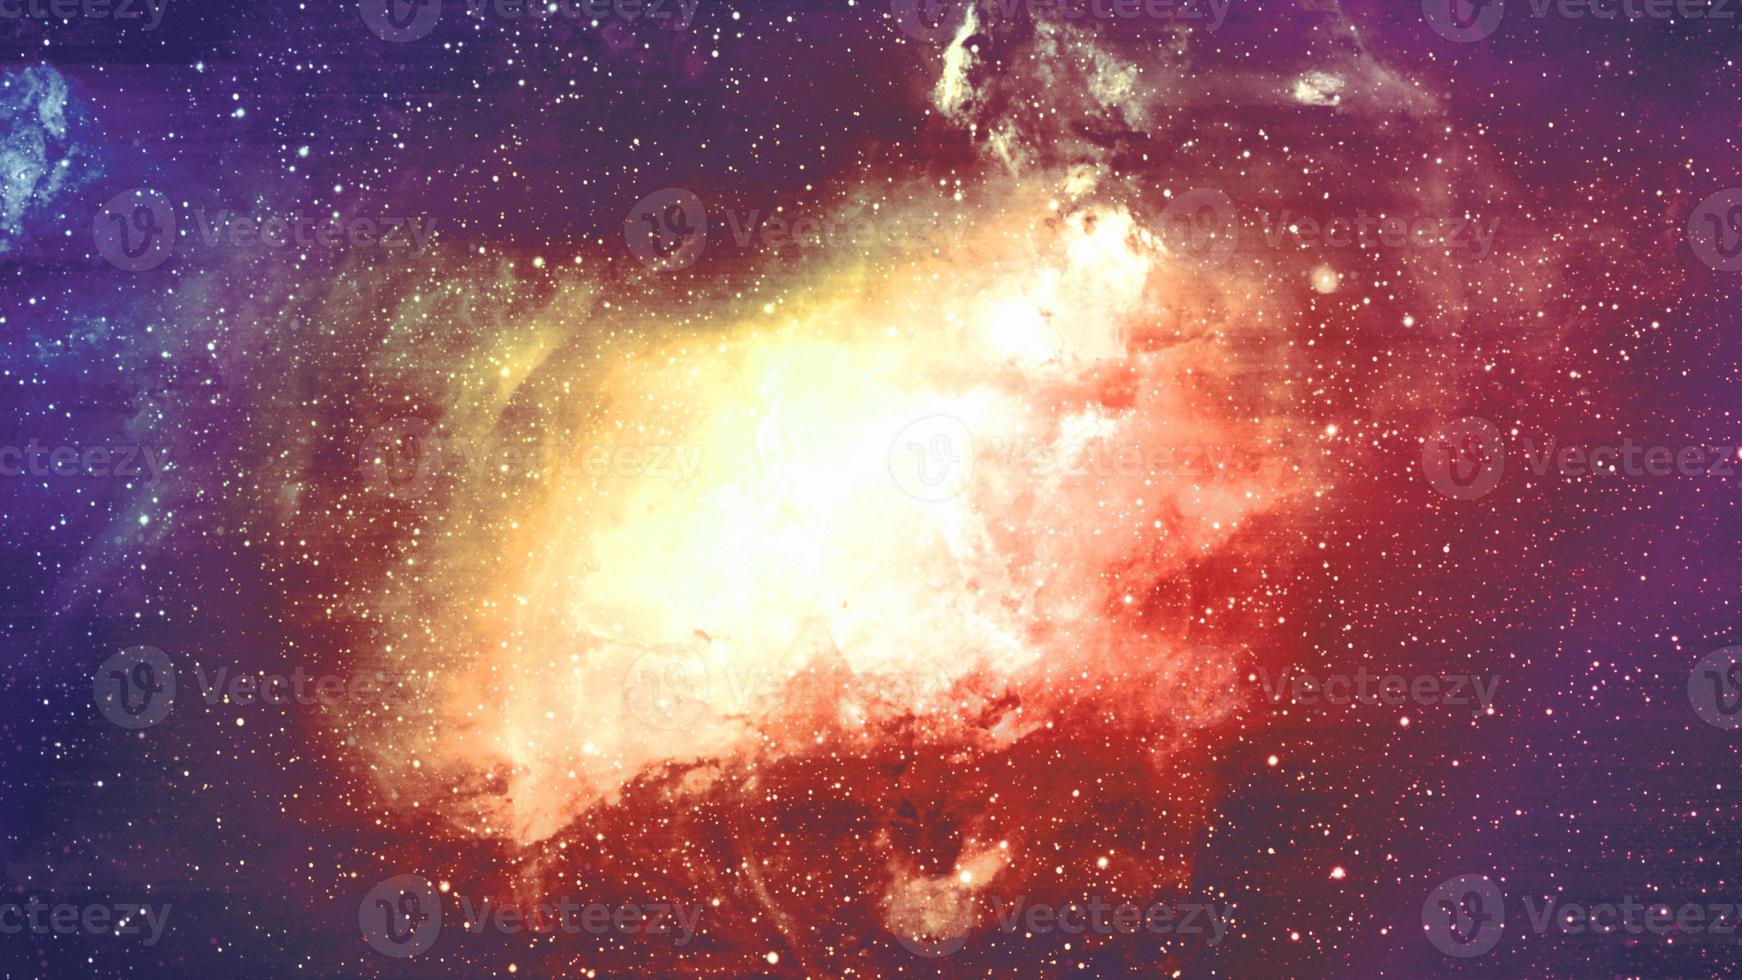 infinito cosmos hermoso fondo rojo y azul oscuro con nebulosa, cúmulo de estrellas en el espacio exterior. belleza del universo infinito lleno de estrellas arte cósmico, papel tapiz de ciencia ficción foto